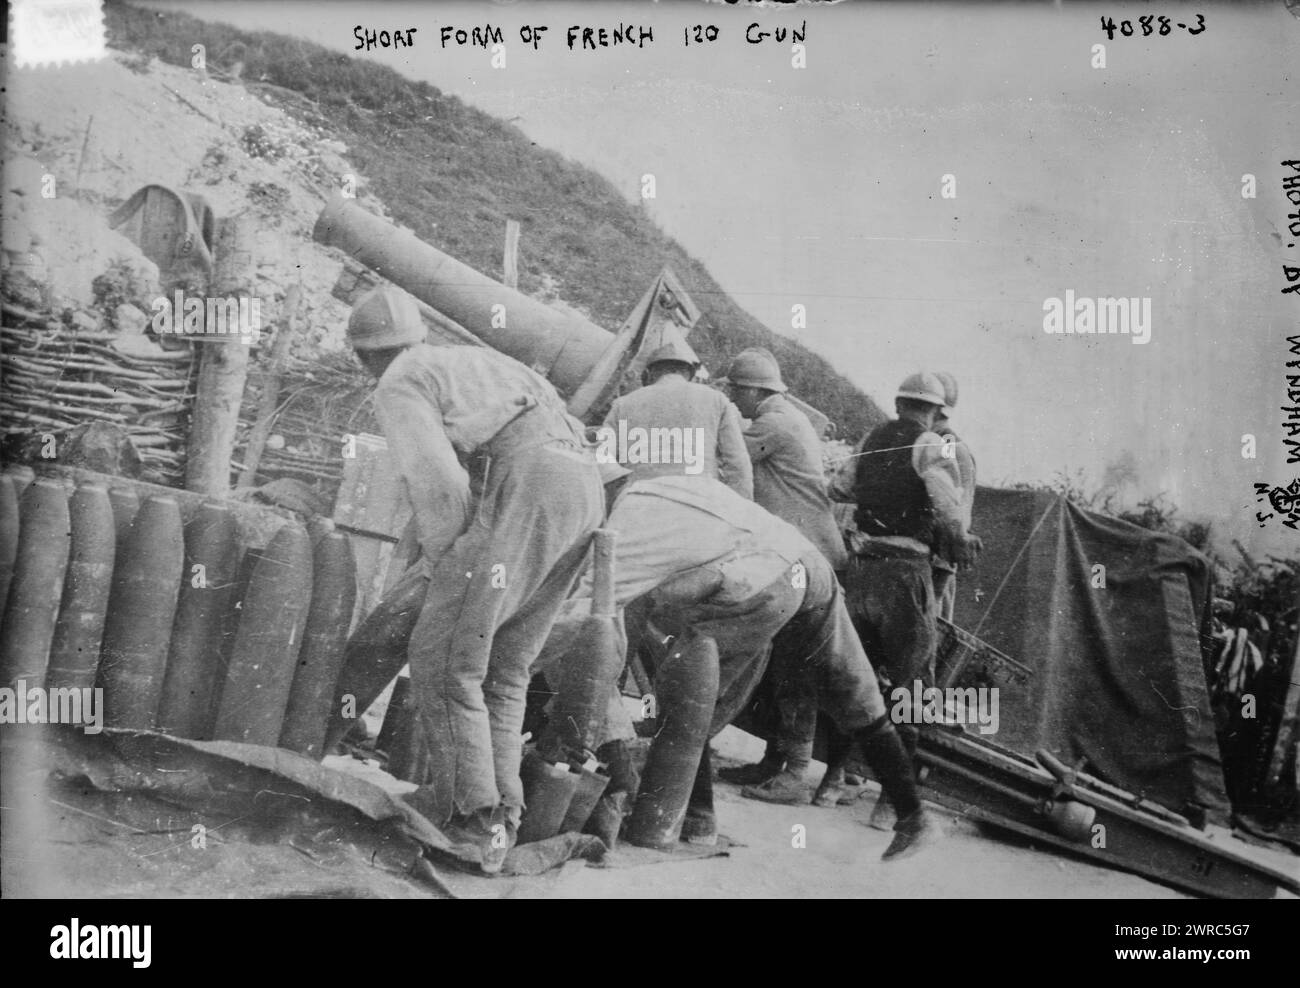 Kurzform der französischen 120-Kanone, Foto zeigt eine französische Schneider-Artillerie-Kanone, die während des Ersten Weltkriegs verwendet wurde, zwischen ca. 1915 und ca. 1920, Weltkrieg, 1914-1918, Glasnegative, 1 negativ: Glas Stockfoto